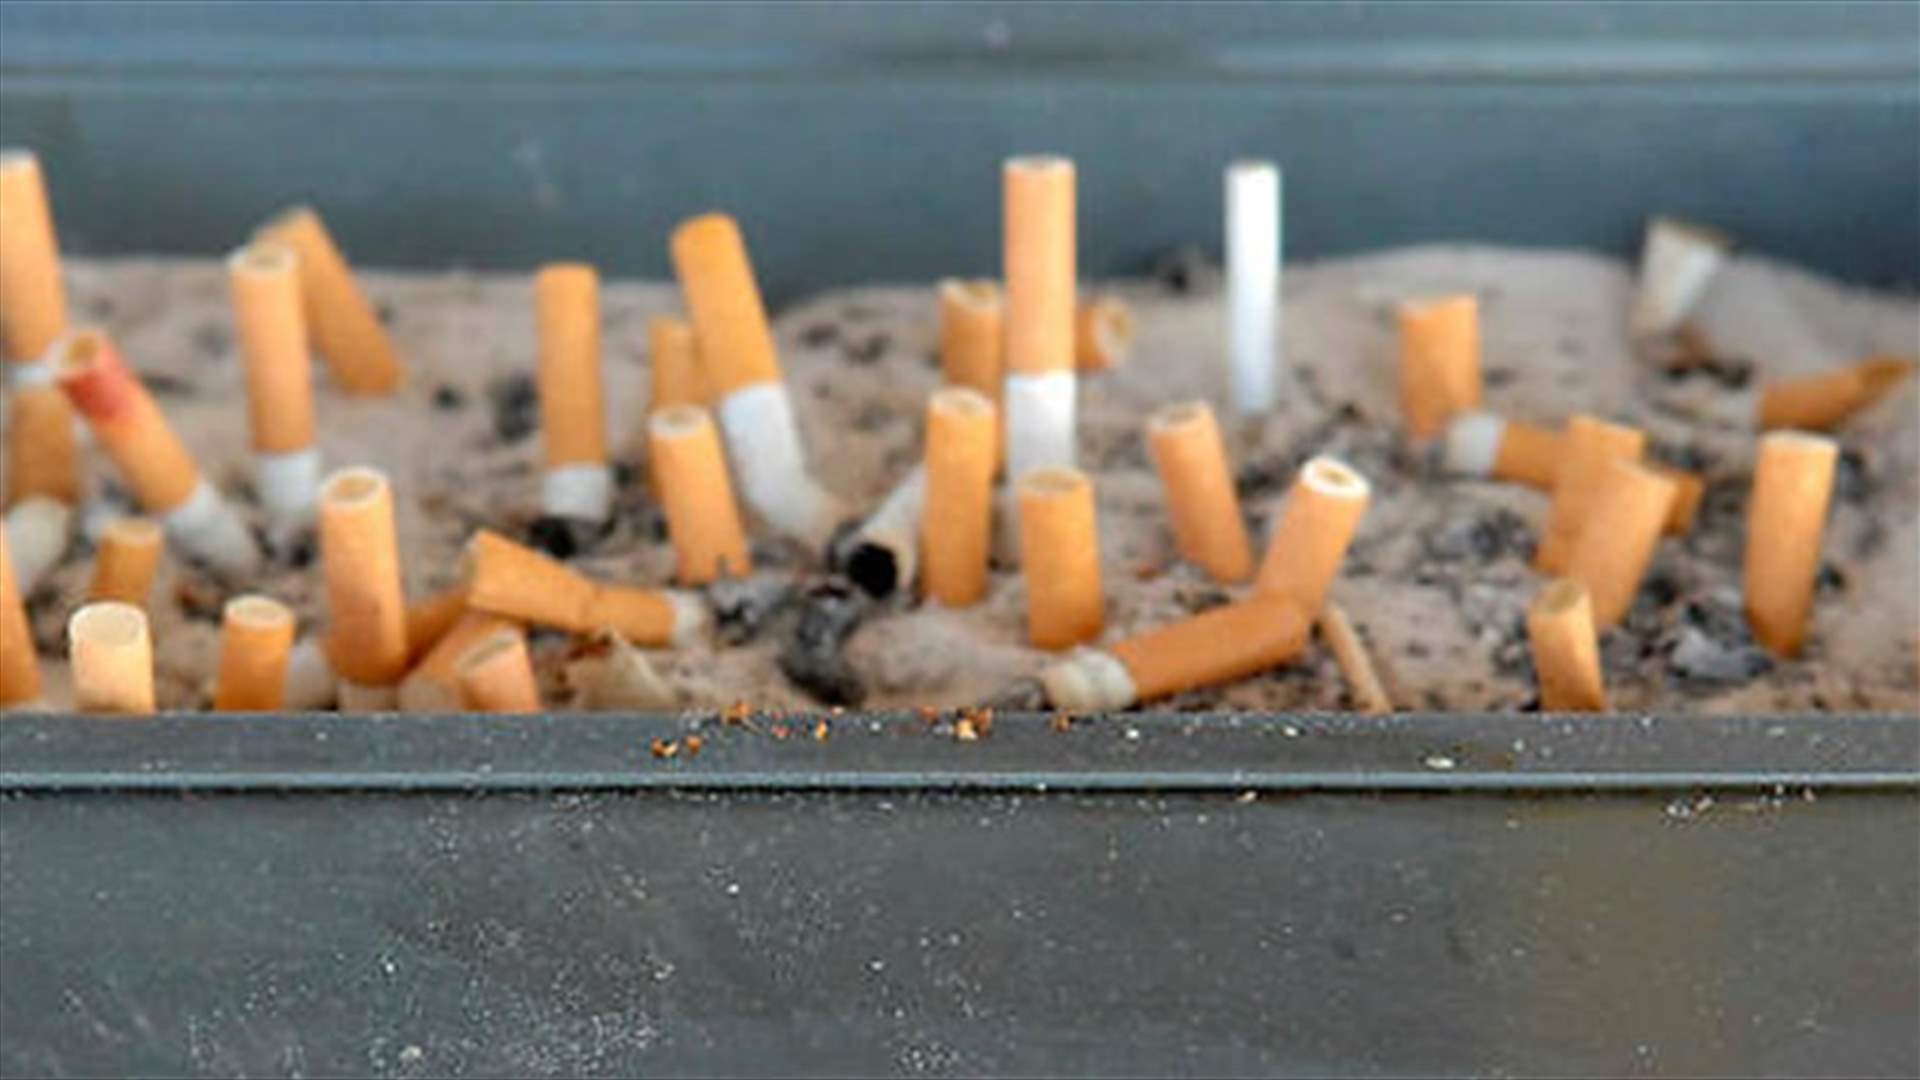  3معتقدات خاطئة عن التدخين لم تعرفوها من قبل!